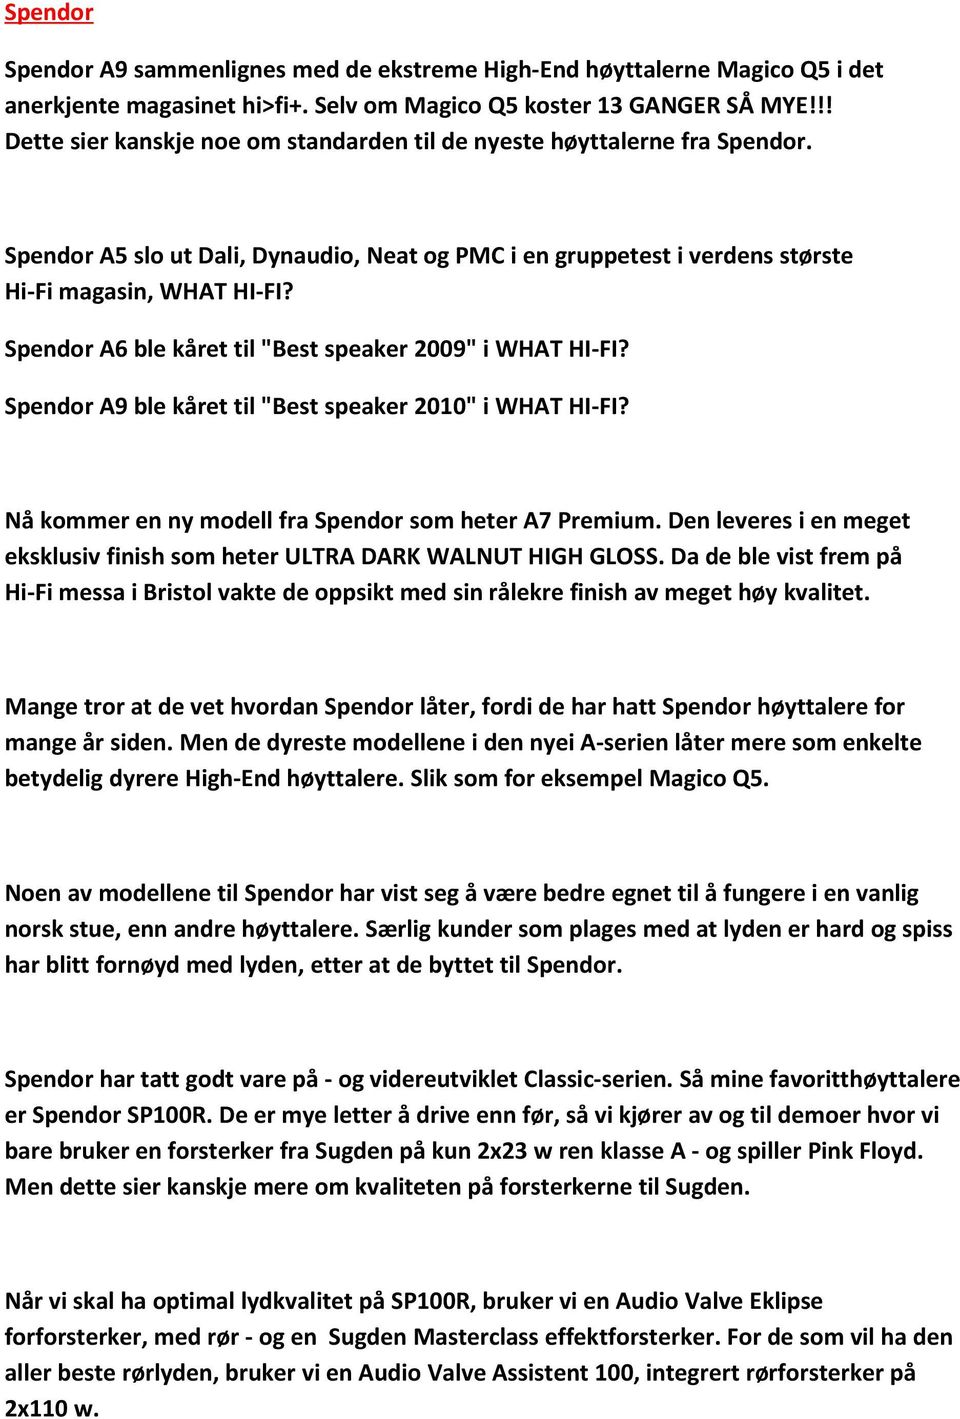 Spendor A6 ble kåret til "Best speaker 2009" i WHAT HI-FI? Spendor A9 ble kåret til "Best speaker 2010" i WHAT HI-FI? Nå kommer en ny modell fra Spendor som heter A7 Premium.